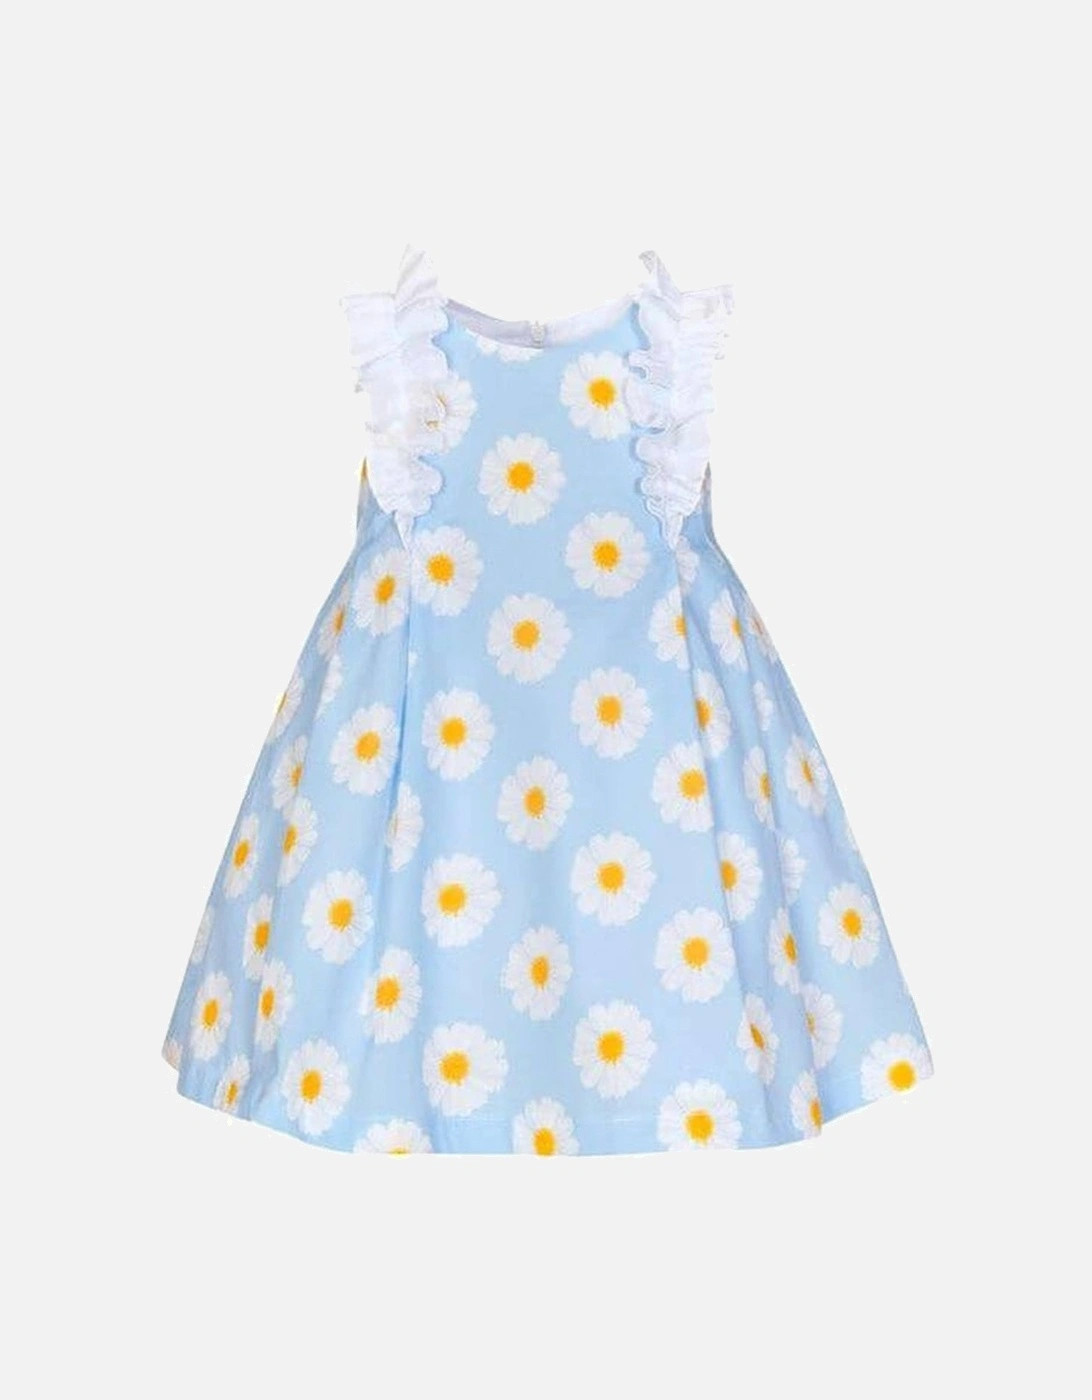 Girls Blue Frill Sunflower Dress, 2 of 1